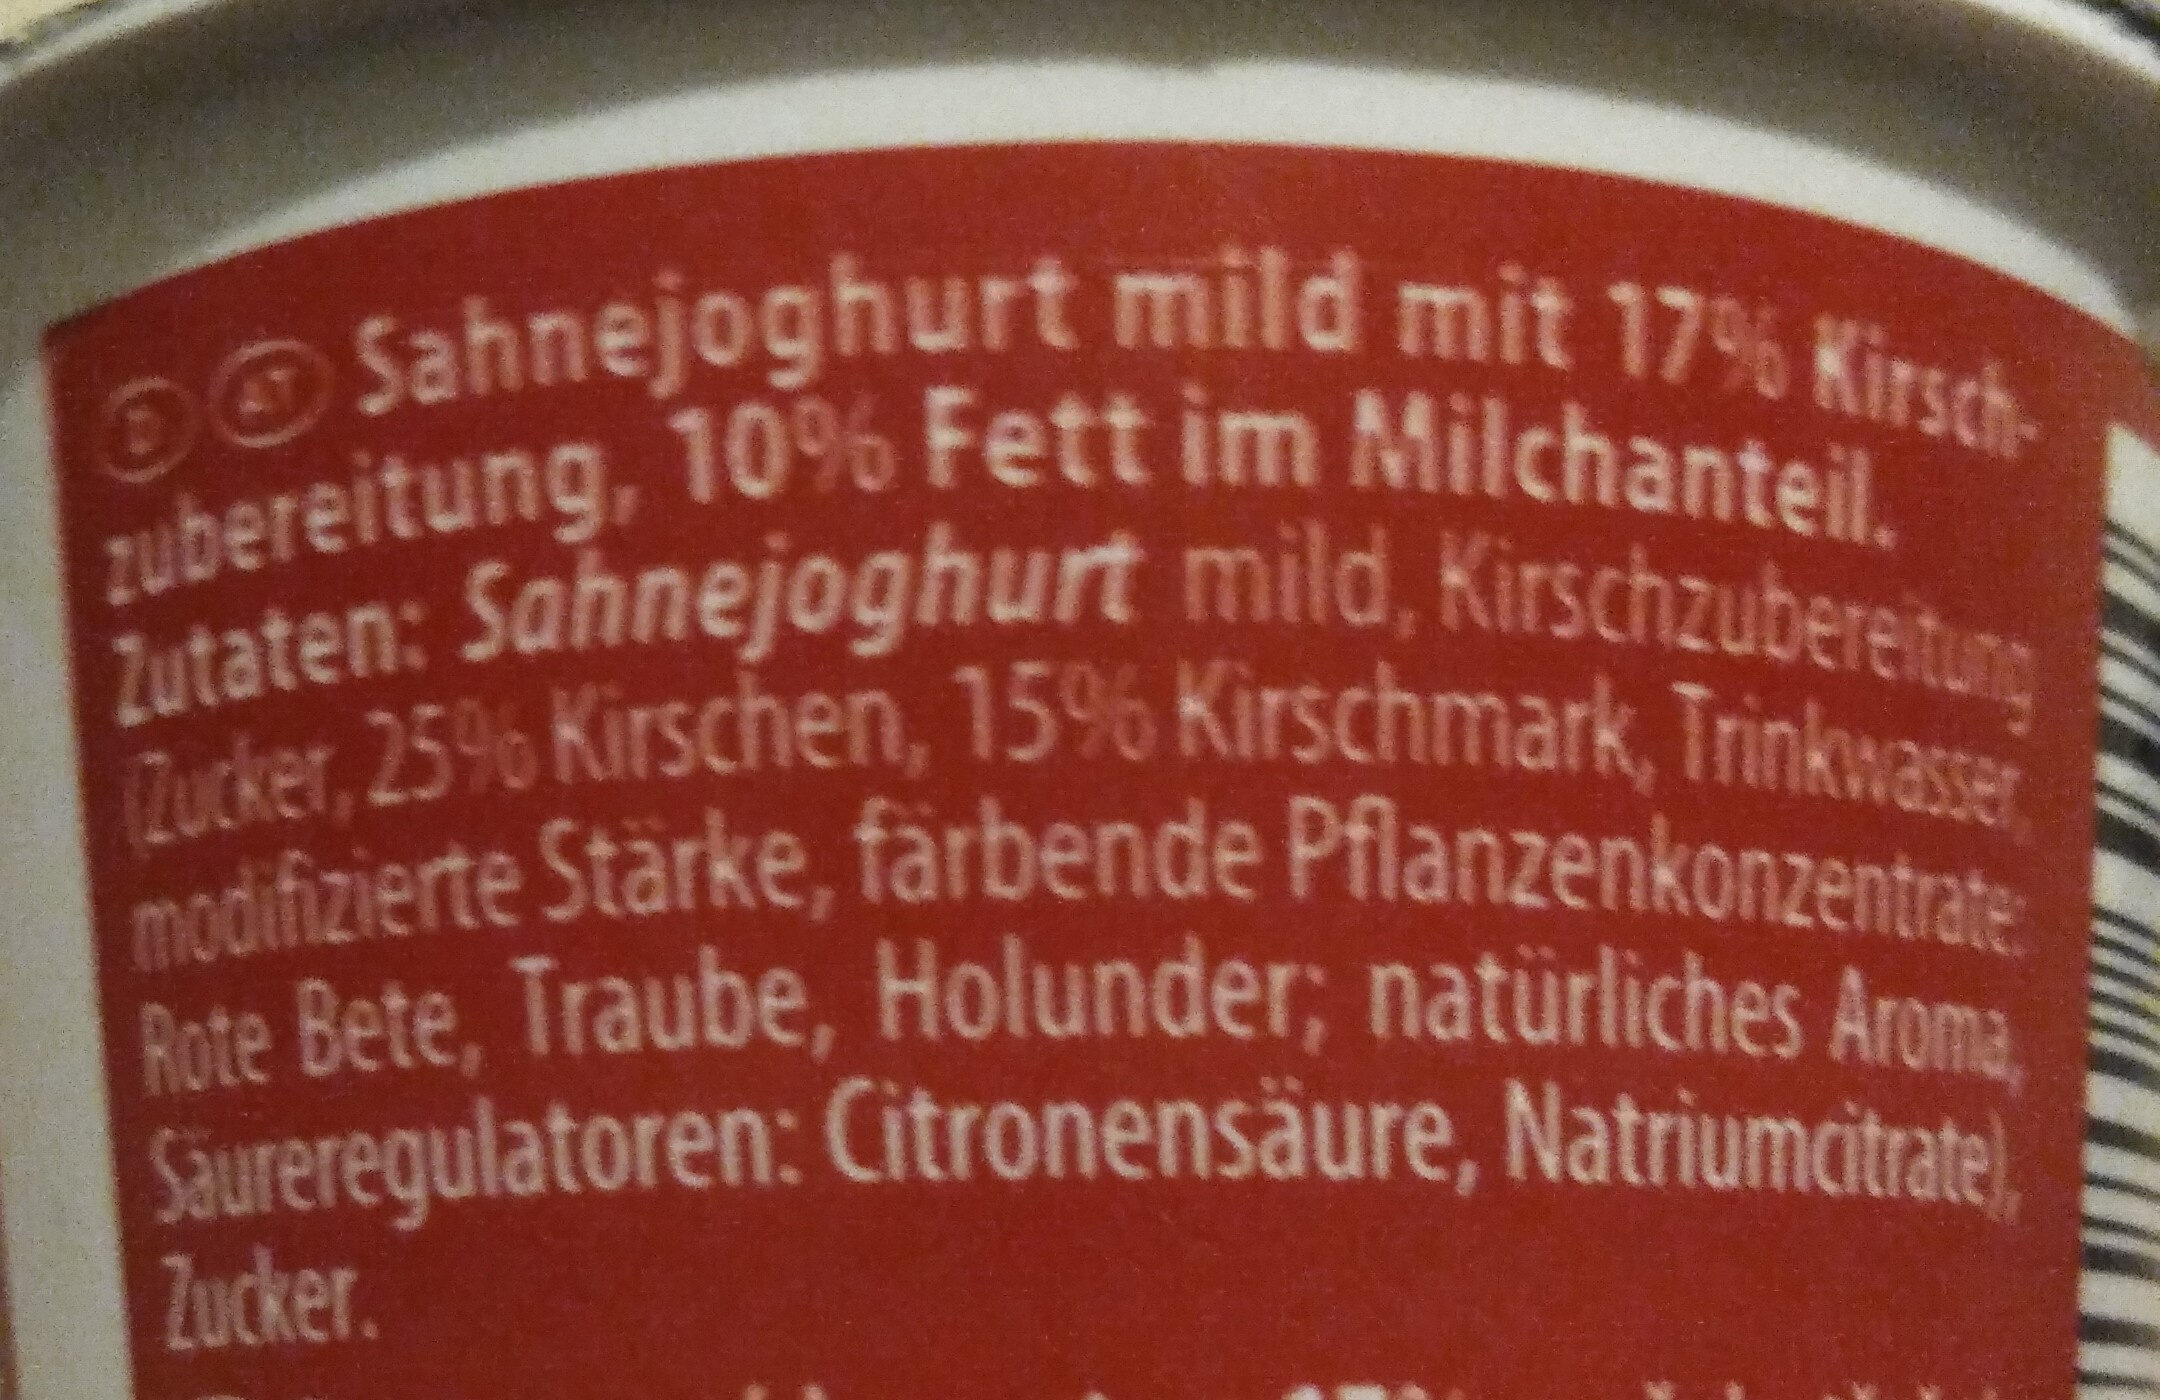 Sahnejoghurt, mild, Kirsche - Zutaten